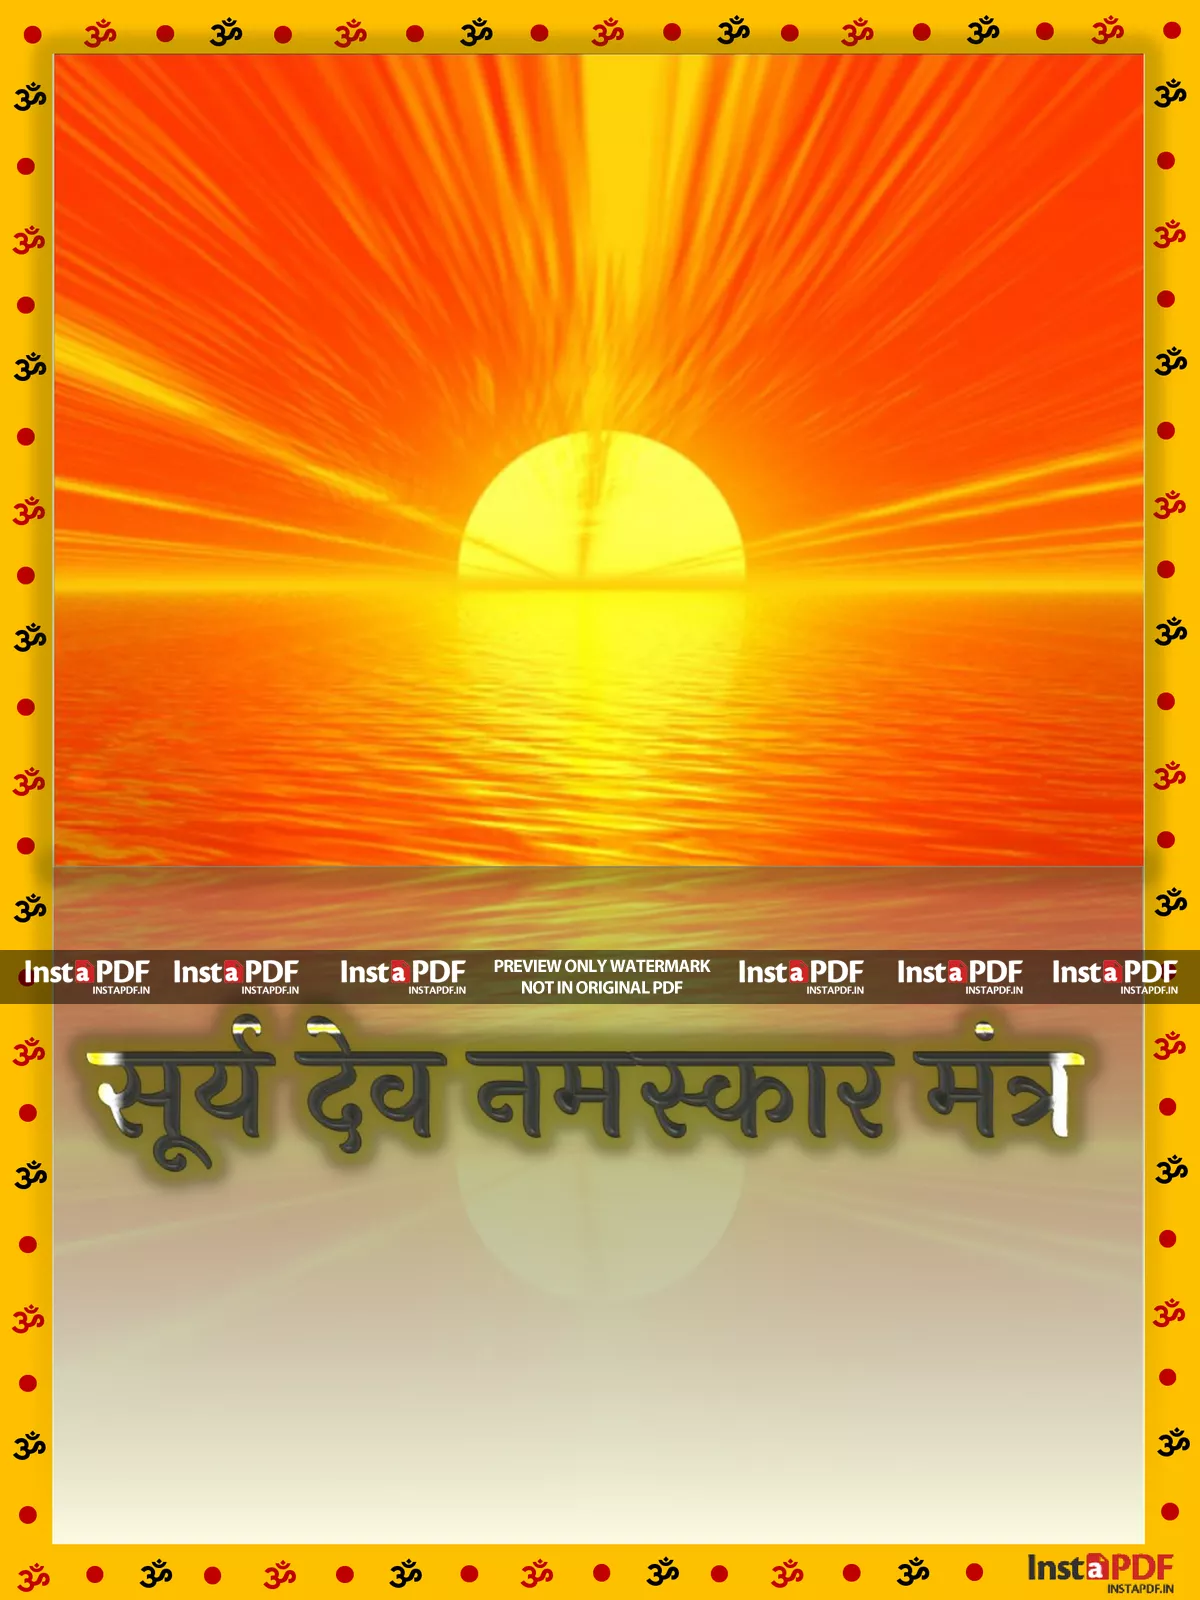 सूर्य नमस्कार मंत्र (Surya Namaskar Mantra)